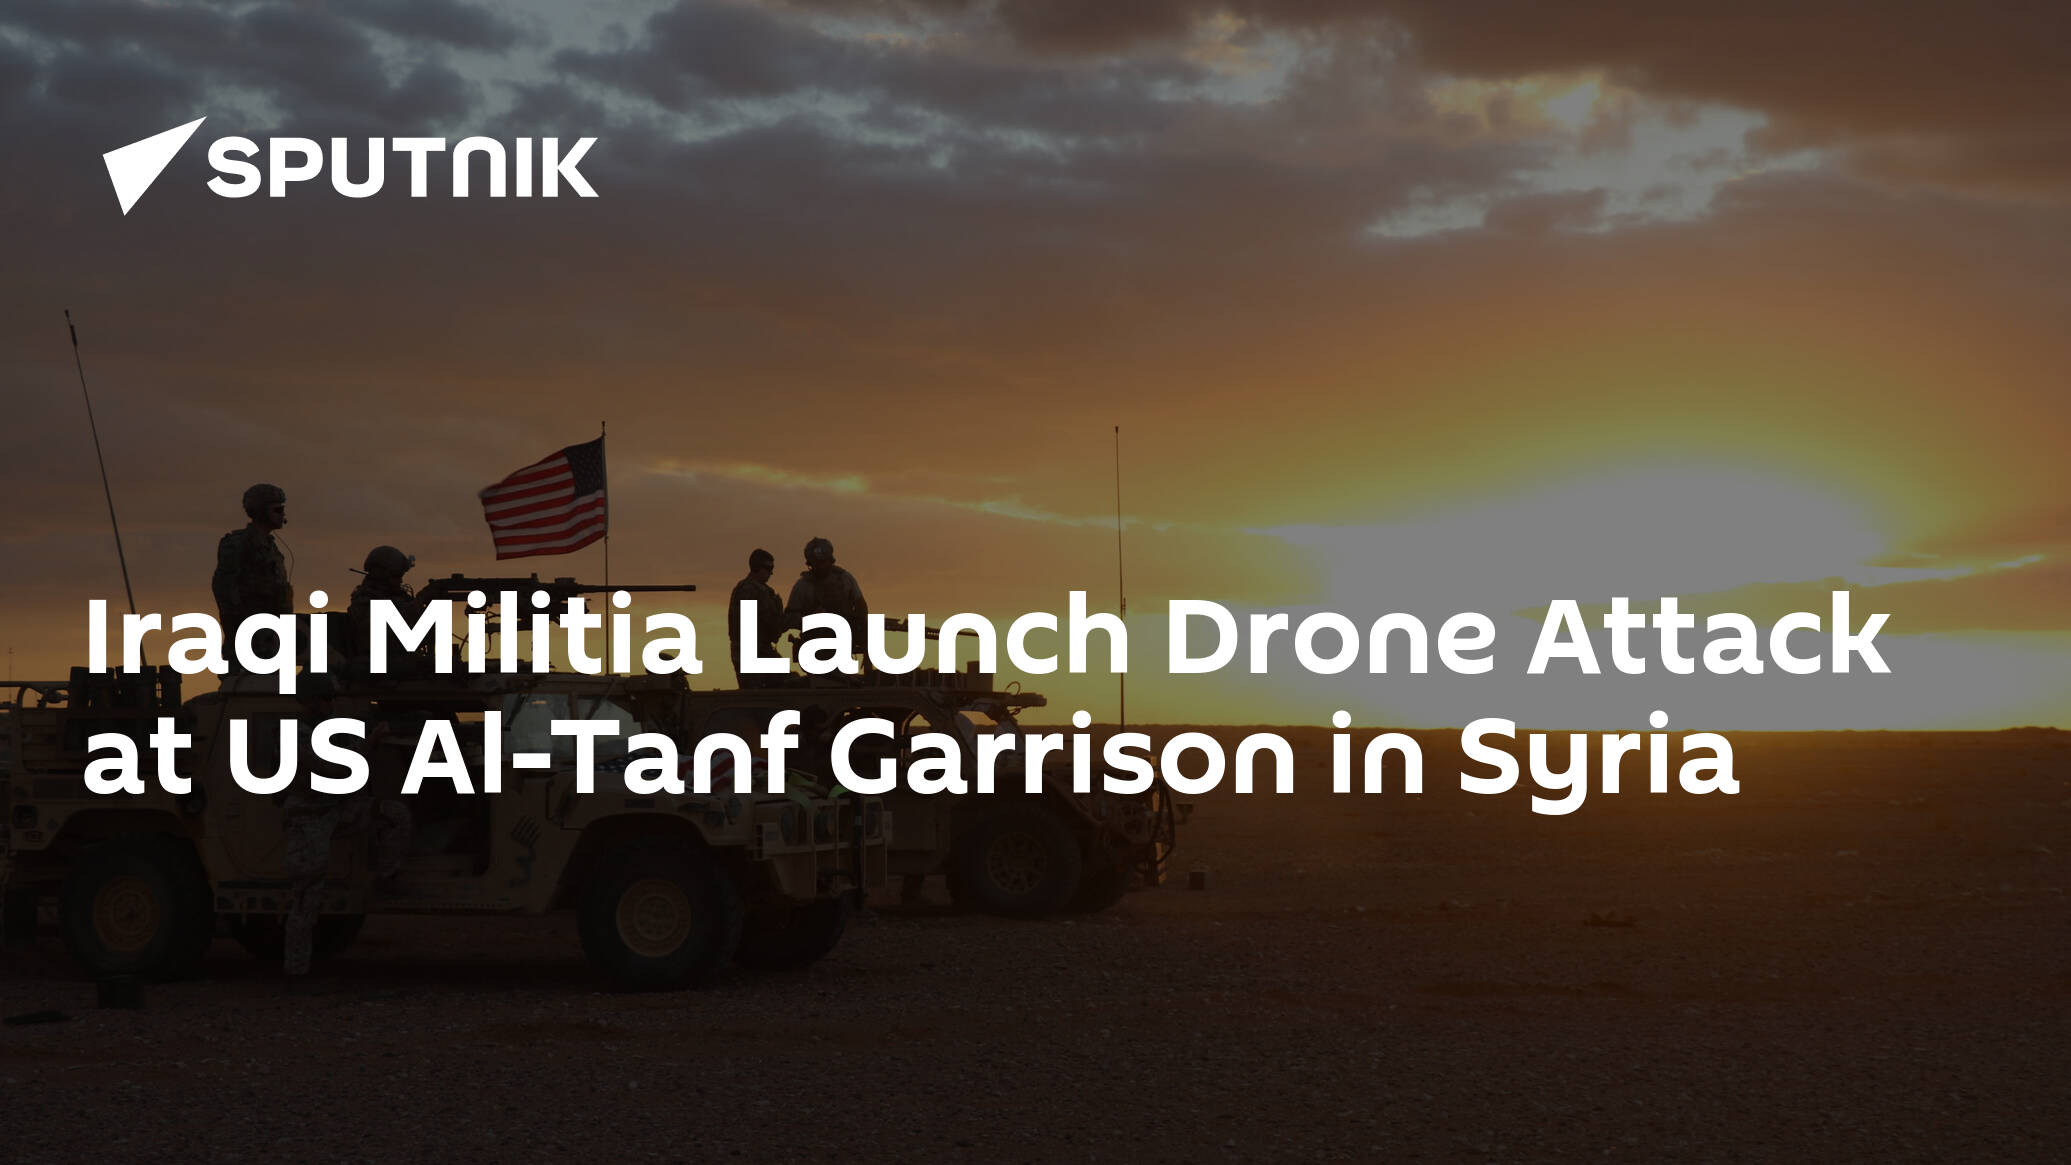 Iraqi Militia Launch Drone Attack at US Al-Tanf Garrison in Syria